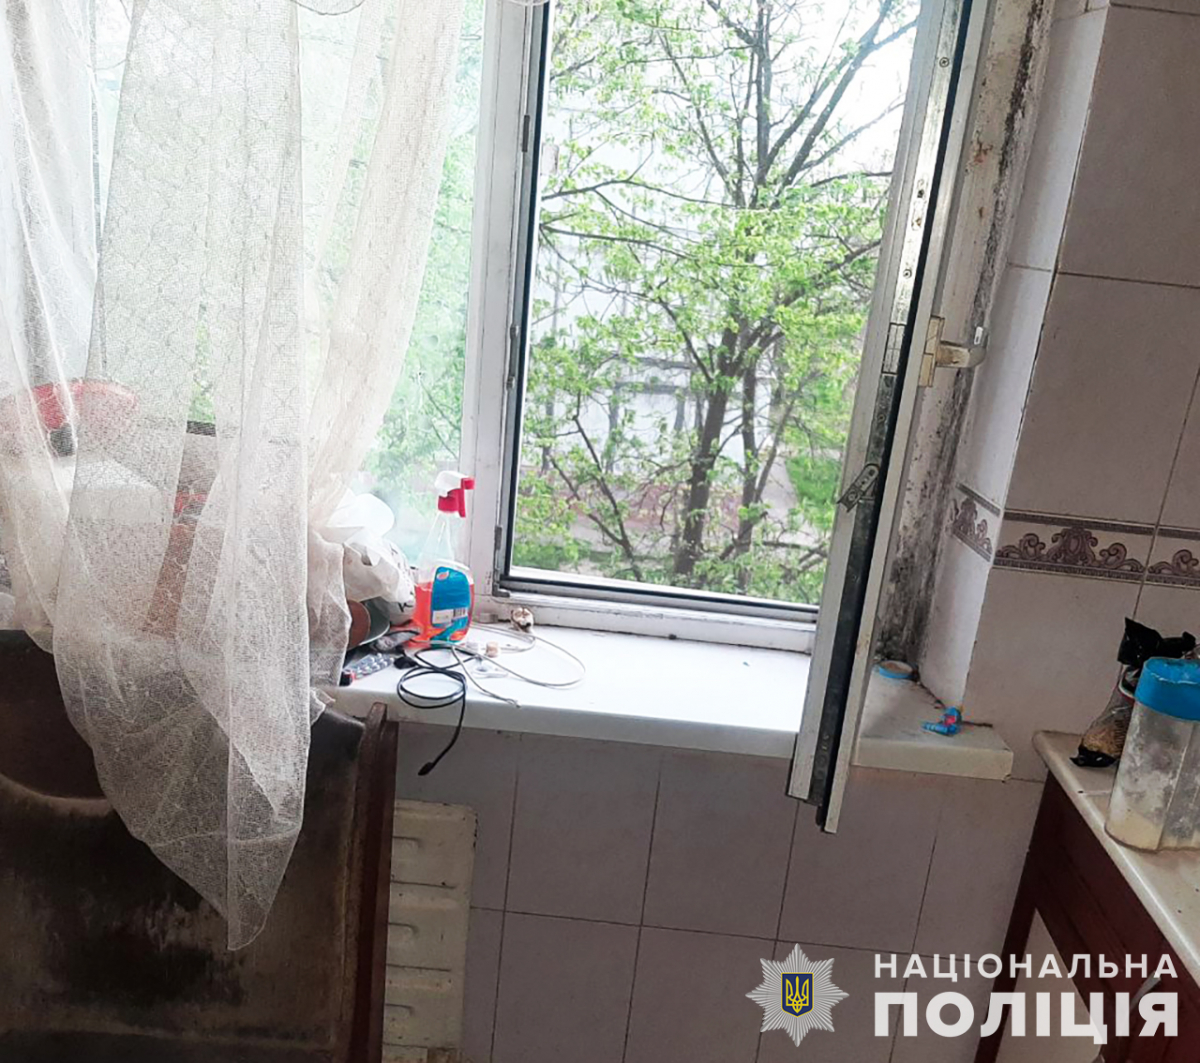 У спальному районі Запоріжжя хлопчик випав з вікна третього поверху на очах у матері - подробиці